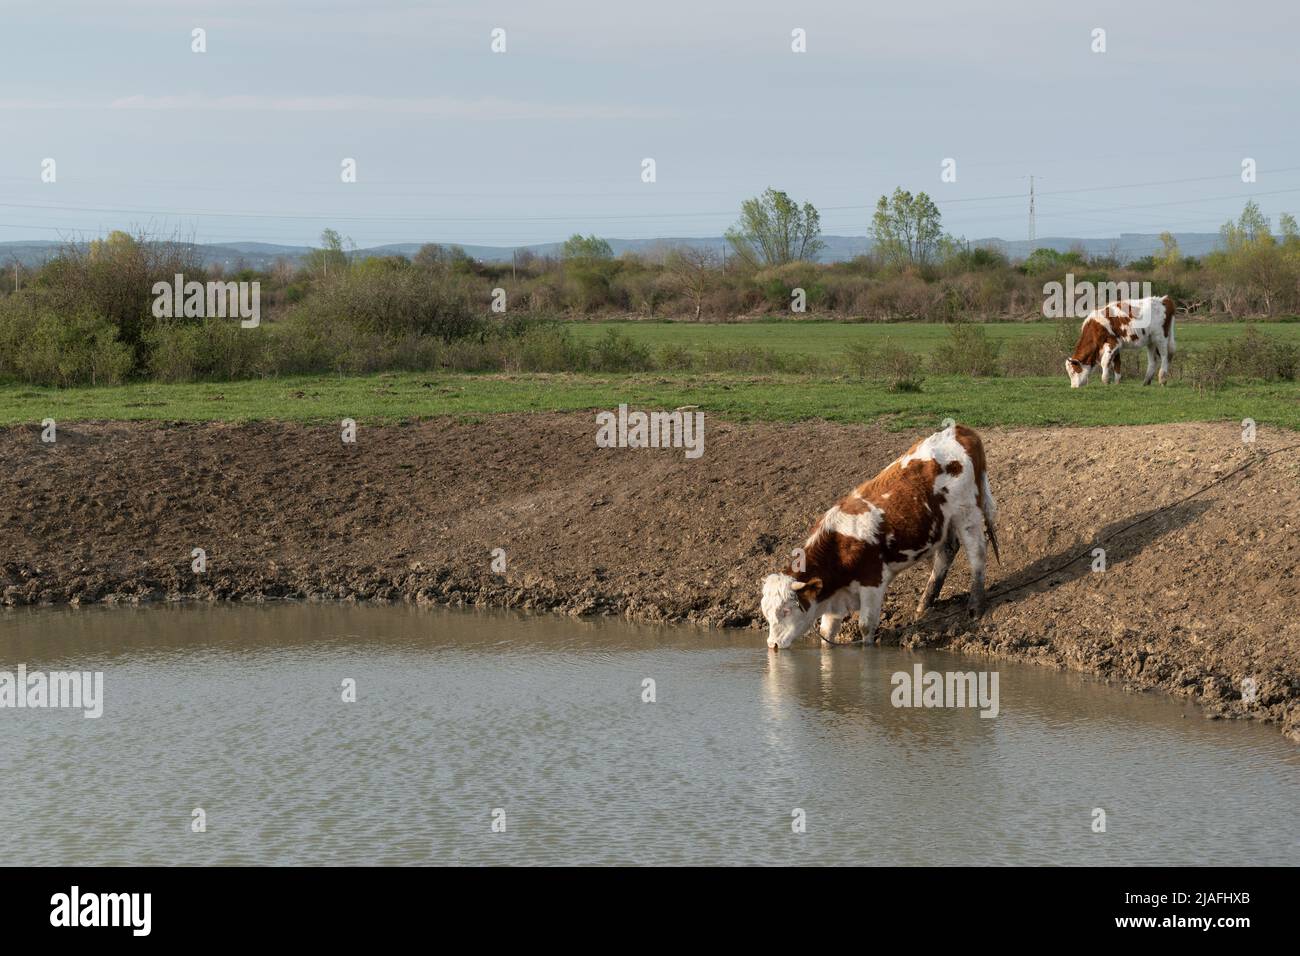 Durstige Kuh Trinkwasser aus Wasserloch, Wasserversorgung für Haustiere in Freilandhaltung, Kuh mit orangen und weißen Haaren Stockfoto